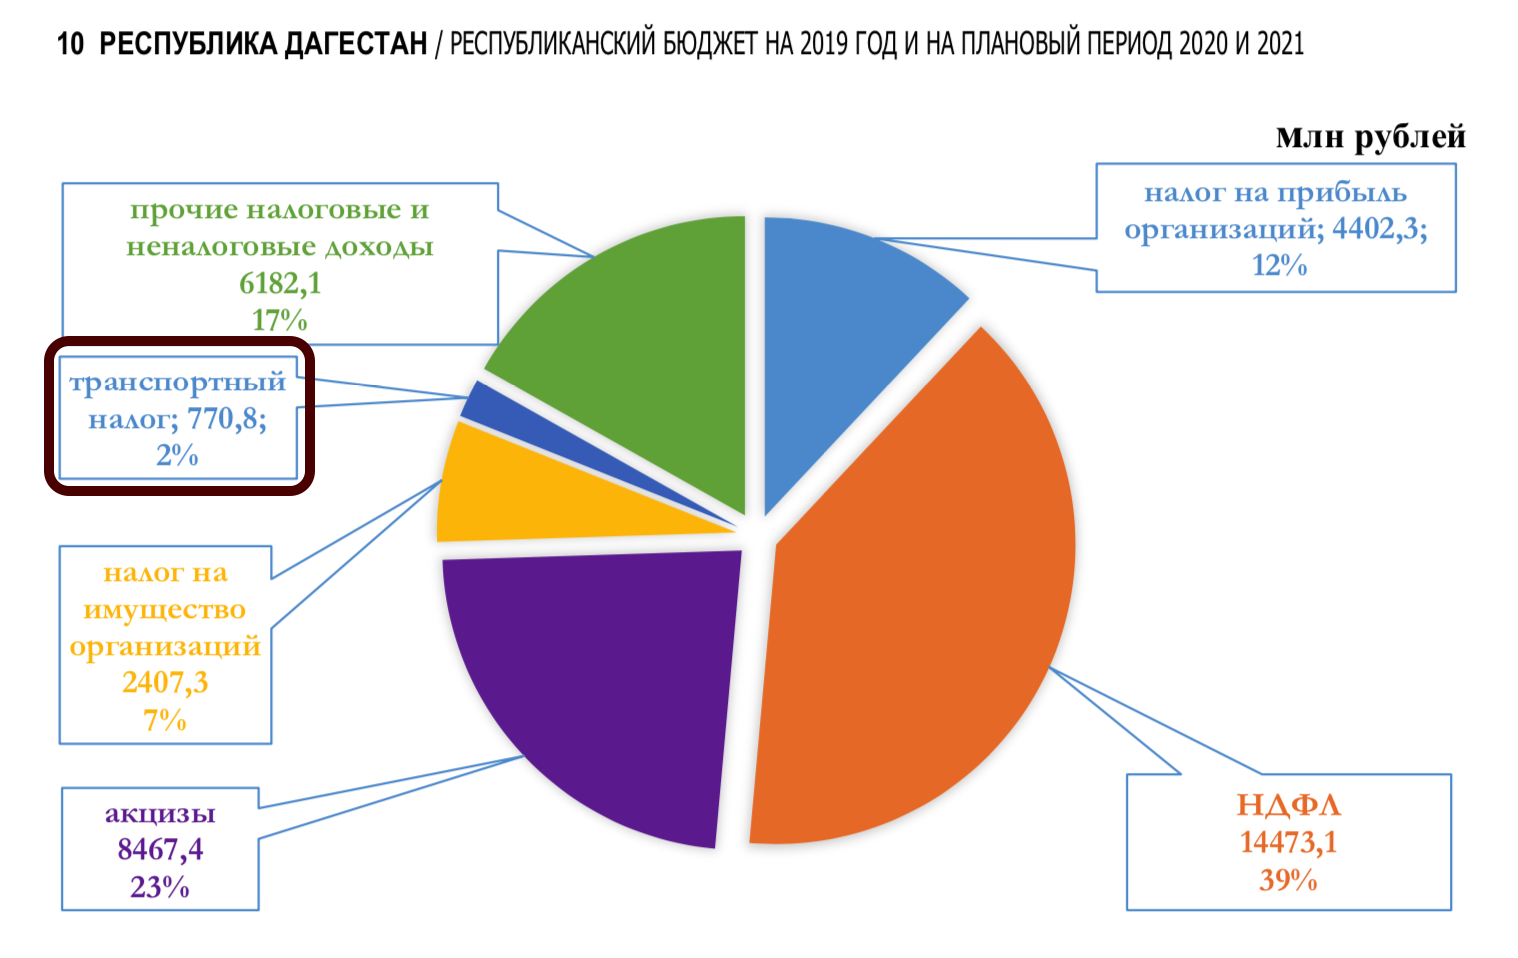 Транспортный налог в какой бюджет. Транспортный налог в Республике Дагестан на 2020 год. Бюджет Дагестана. Бюджет Дагестана на 2021 год. Транспортный налог в Дагестане на 2021.